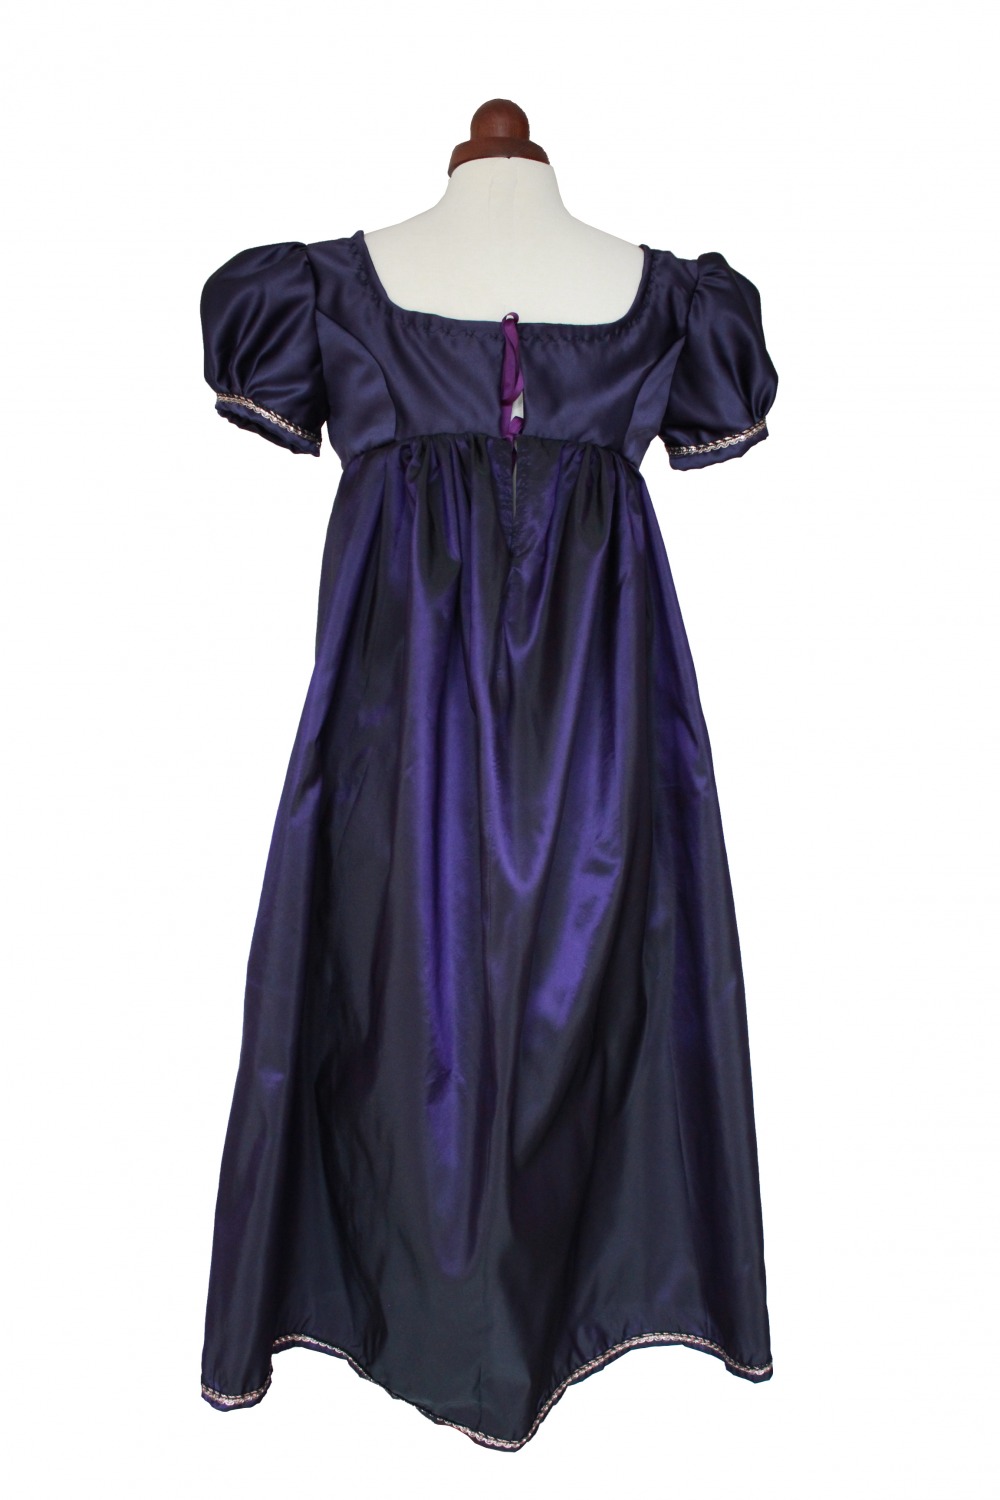 Ladies/ Older Girl's Petite Regency Jane Austen Evening Gown Size 8 ...